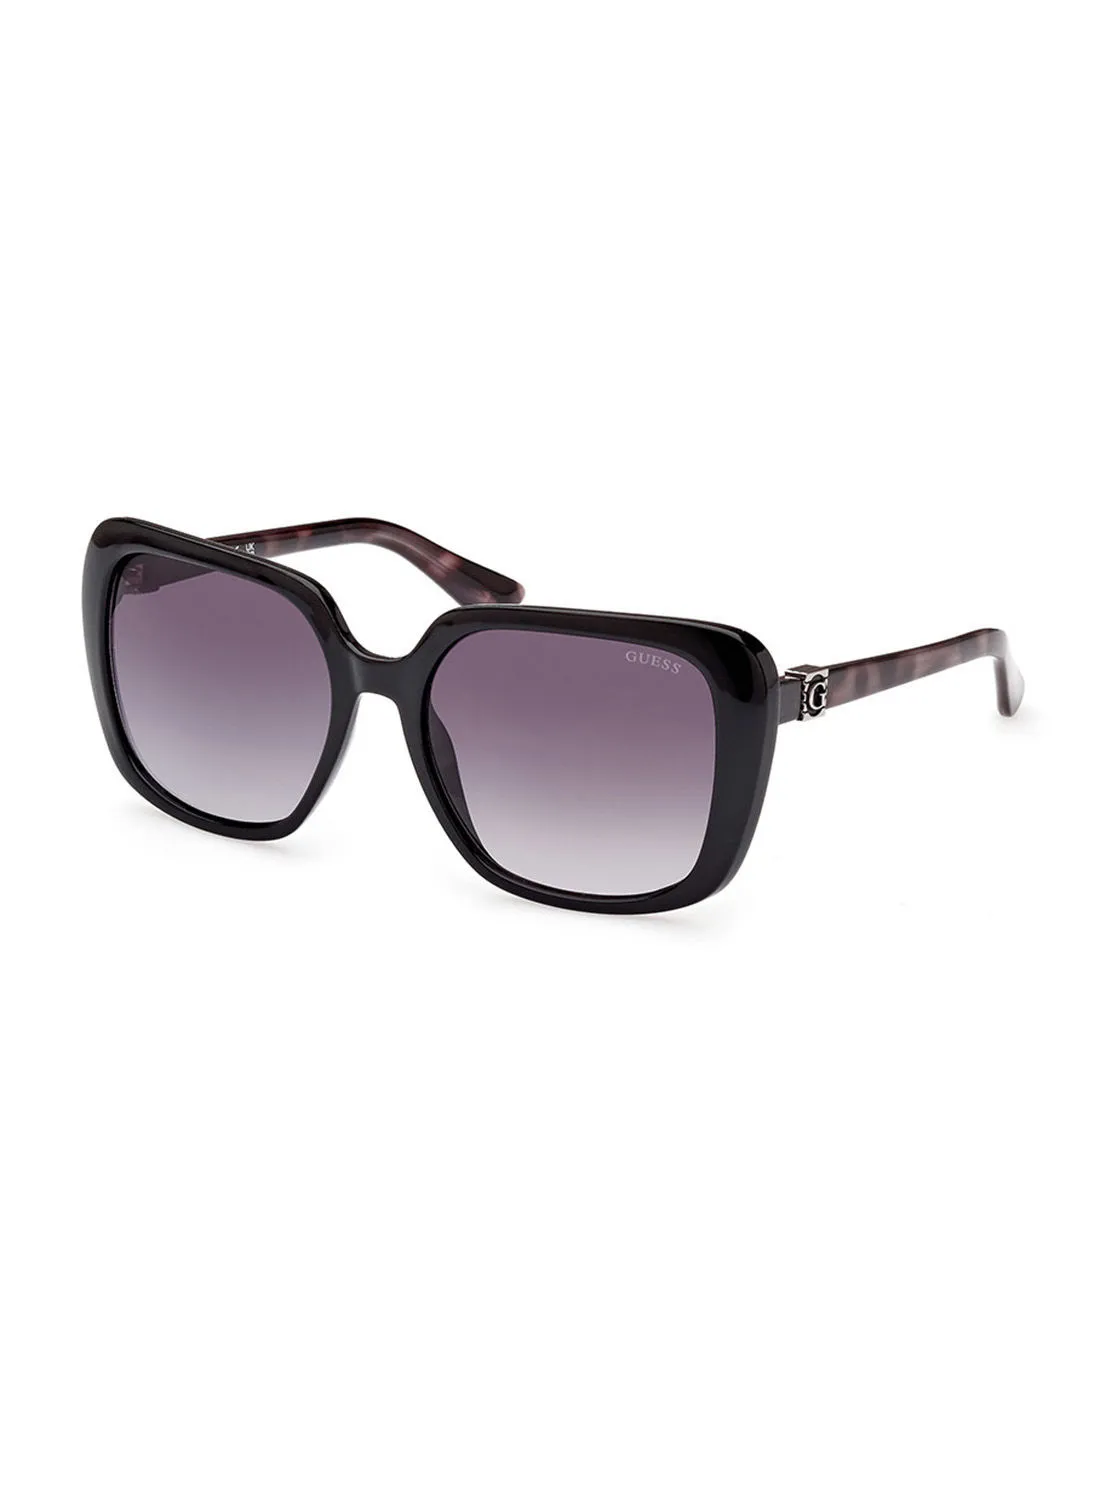 GUESS Sunglasses For Women GU786305B58